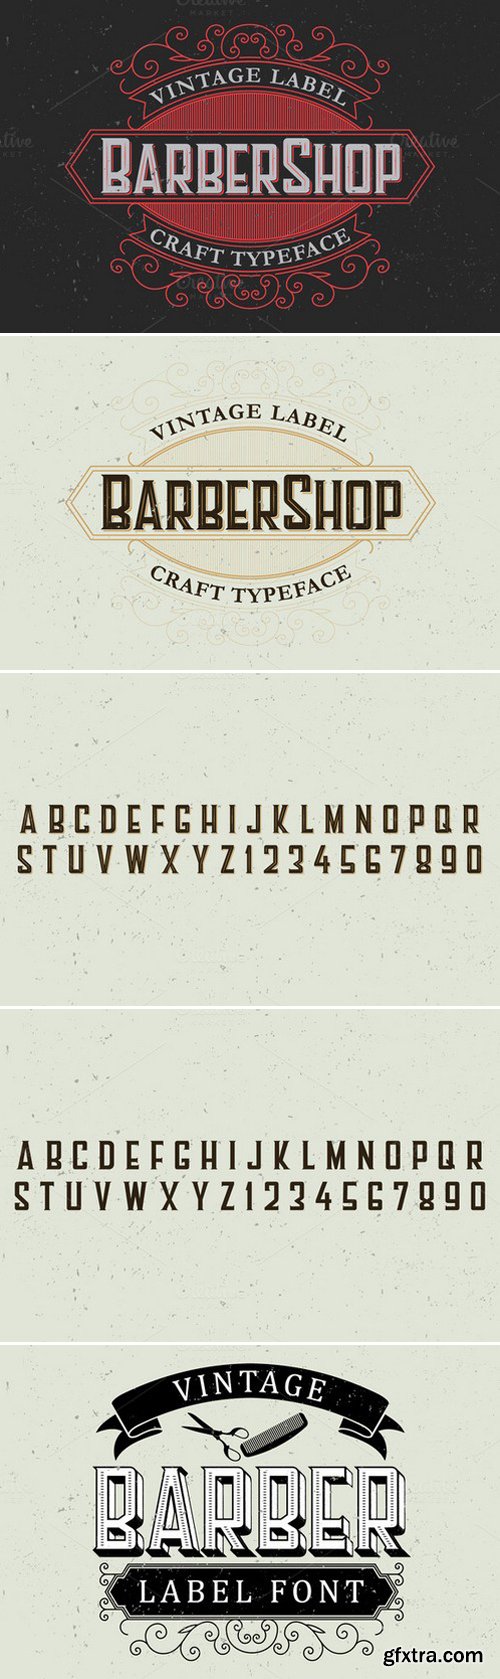 CM - Barber Label Typeface 436885